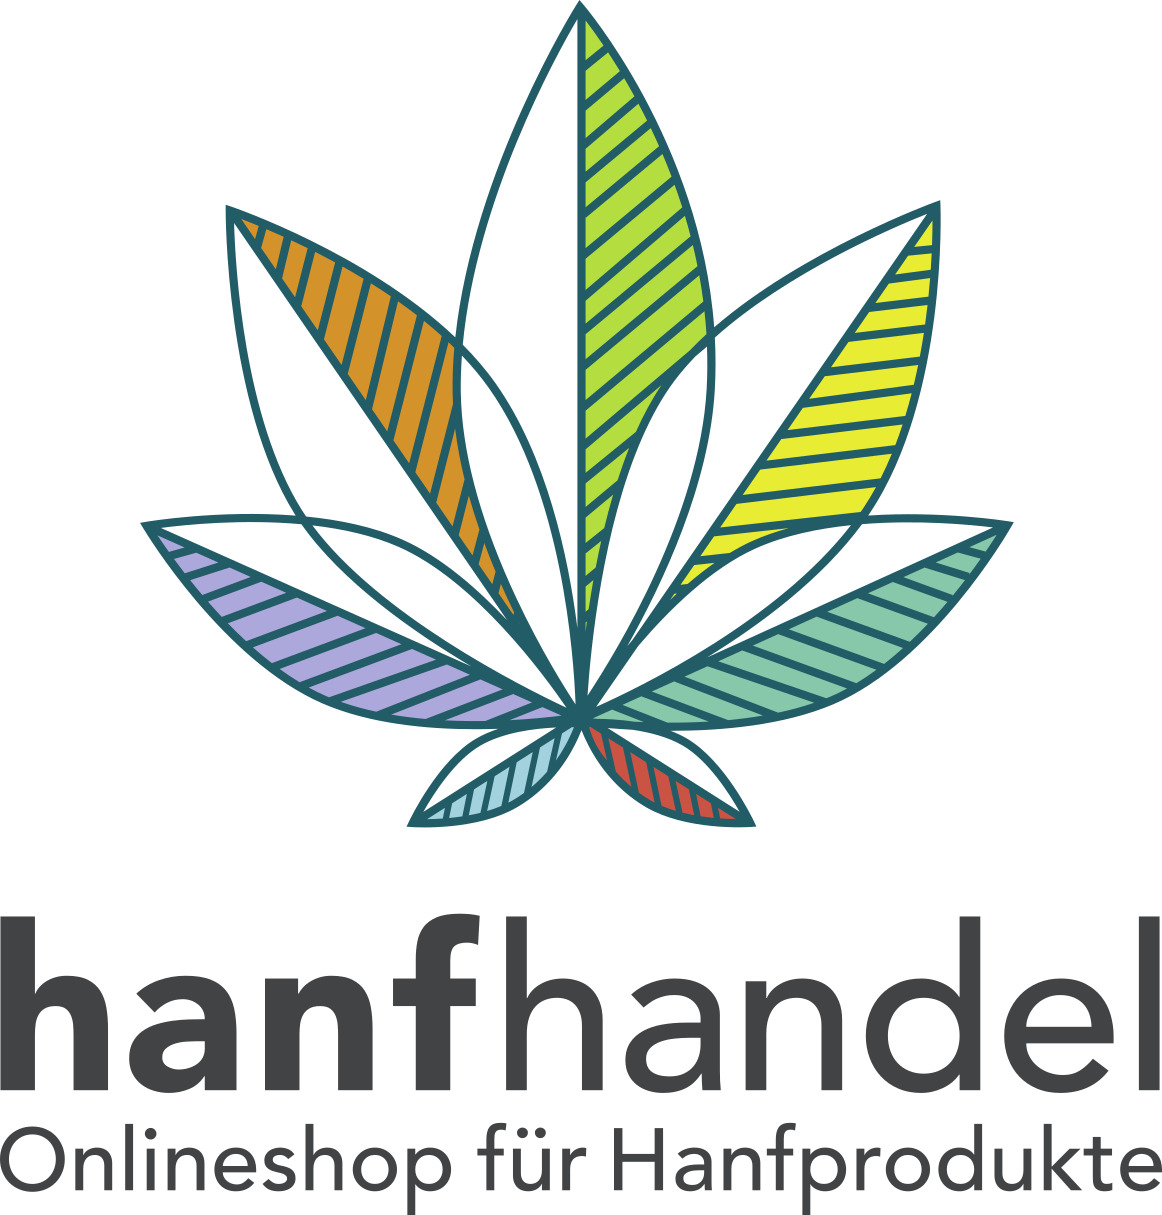 Bild 1 hanfhandel.de GmbH in Hamburg